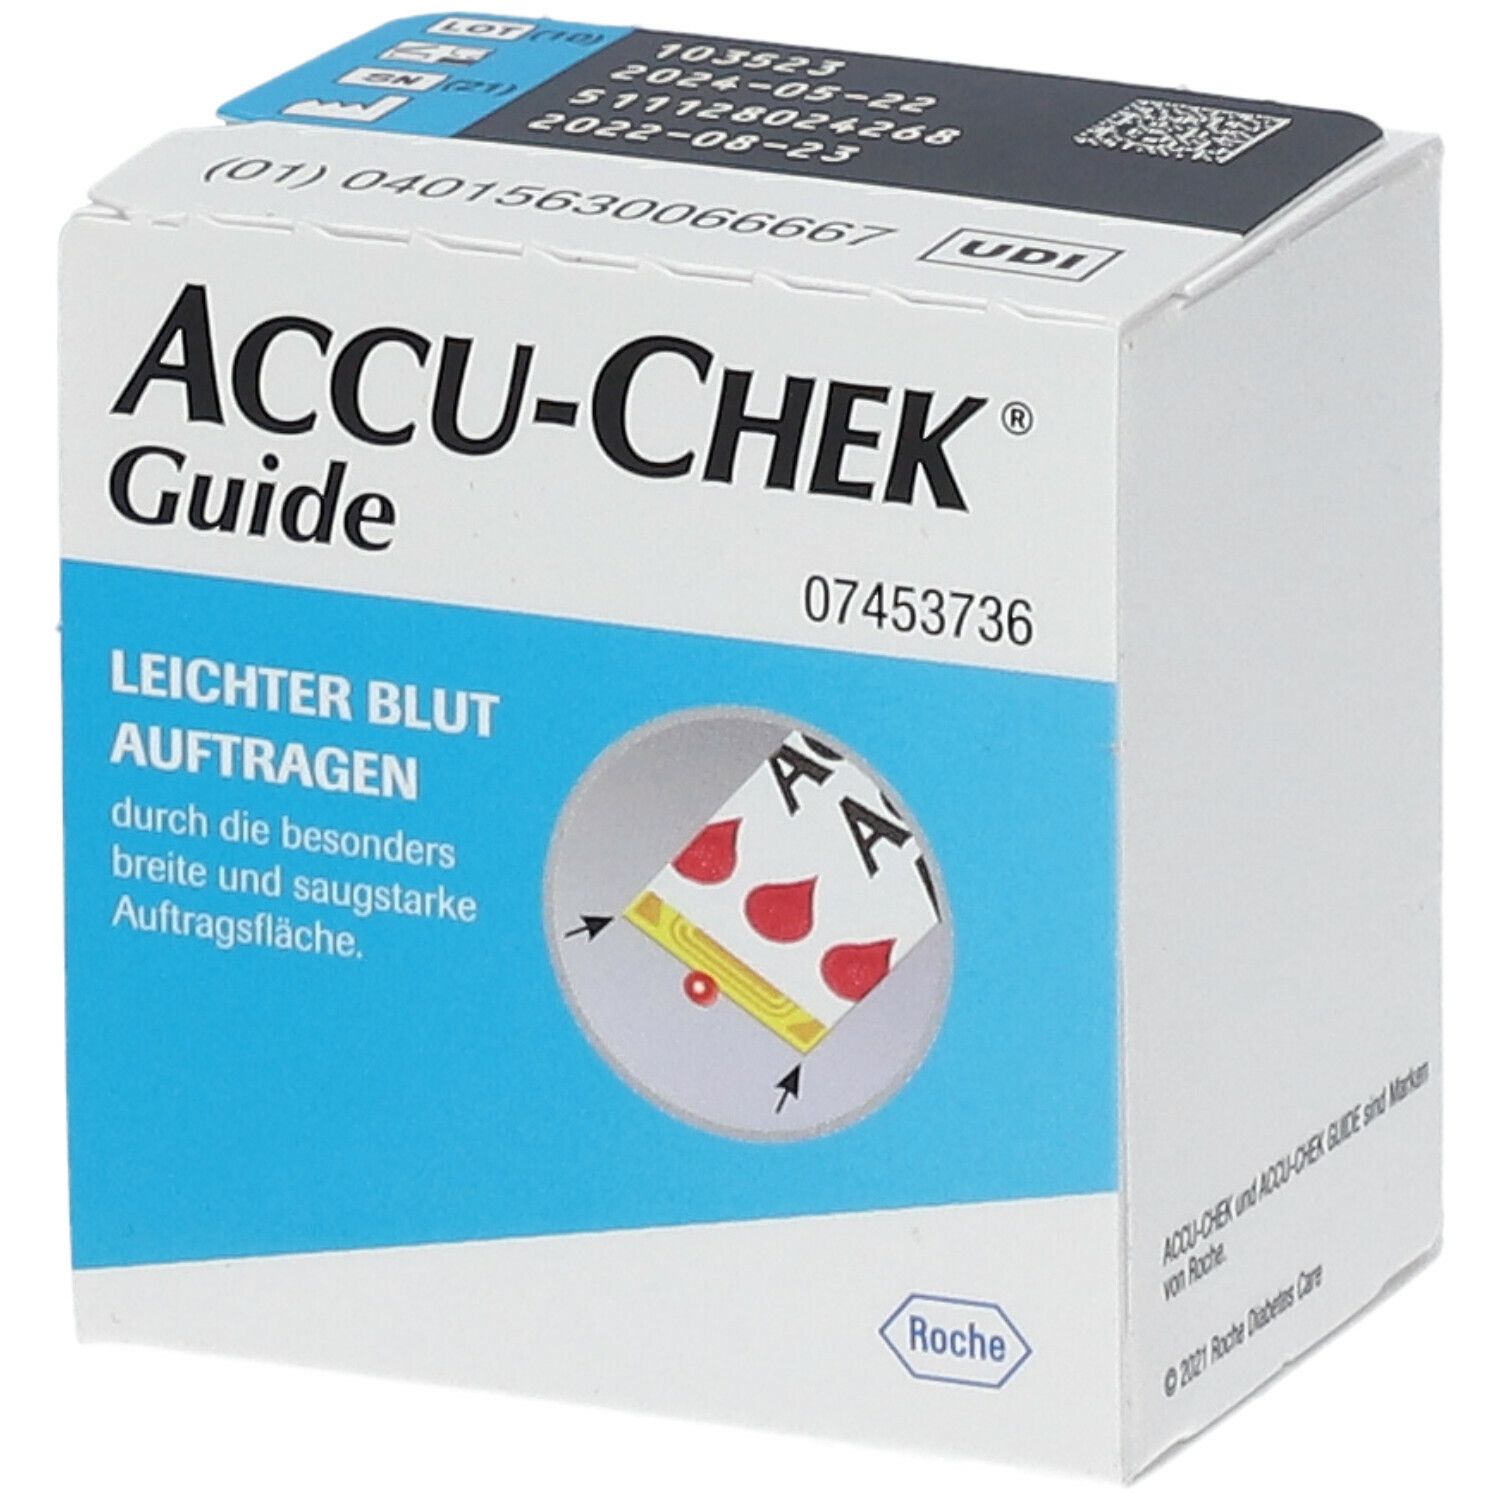 ACCU-CHEK® Guide Teststreifen